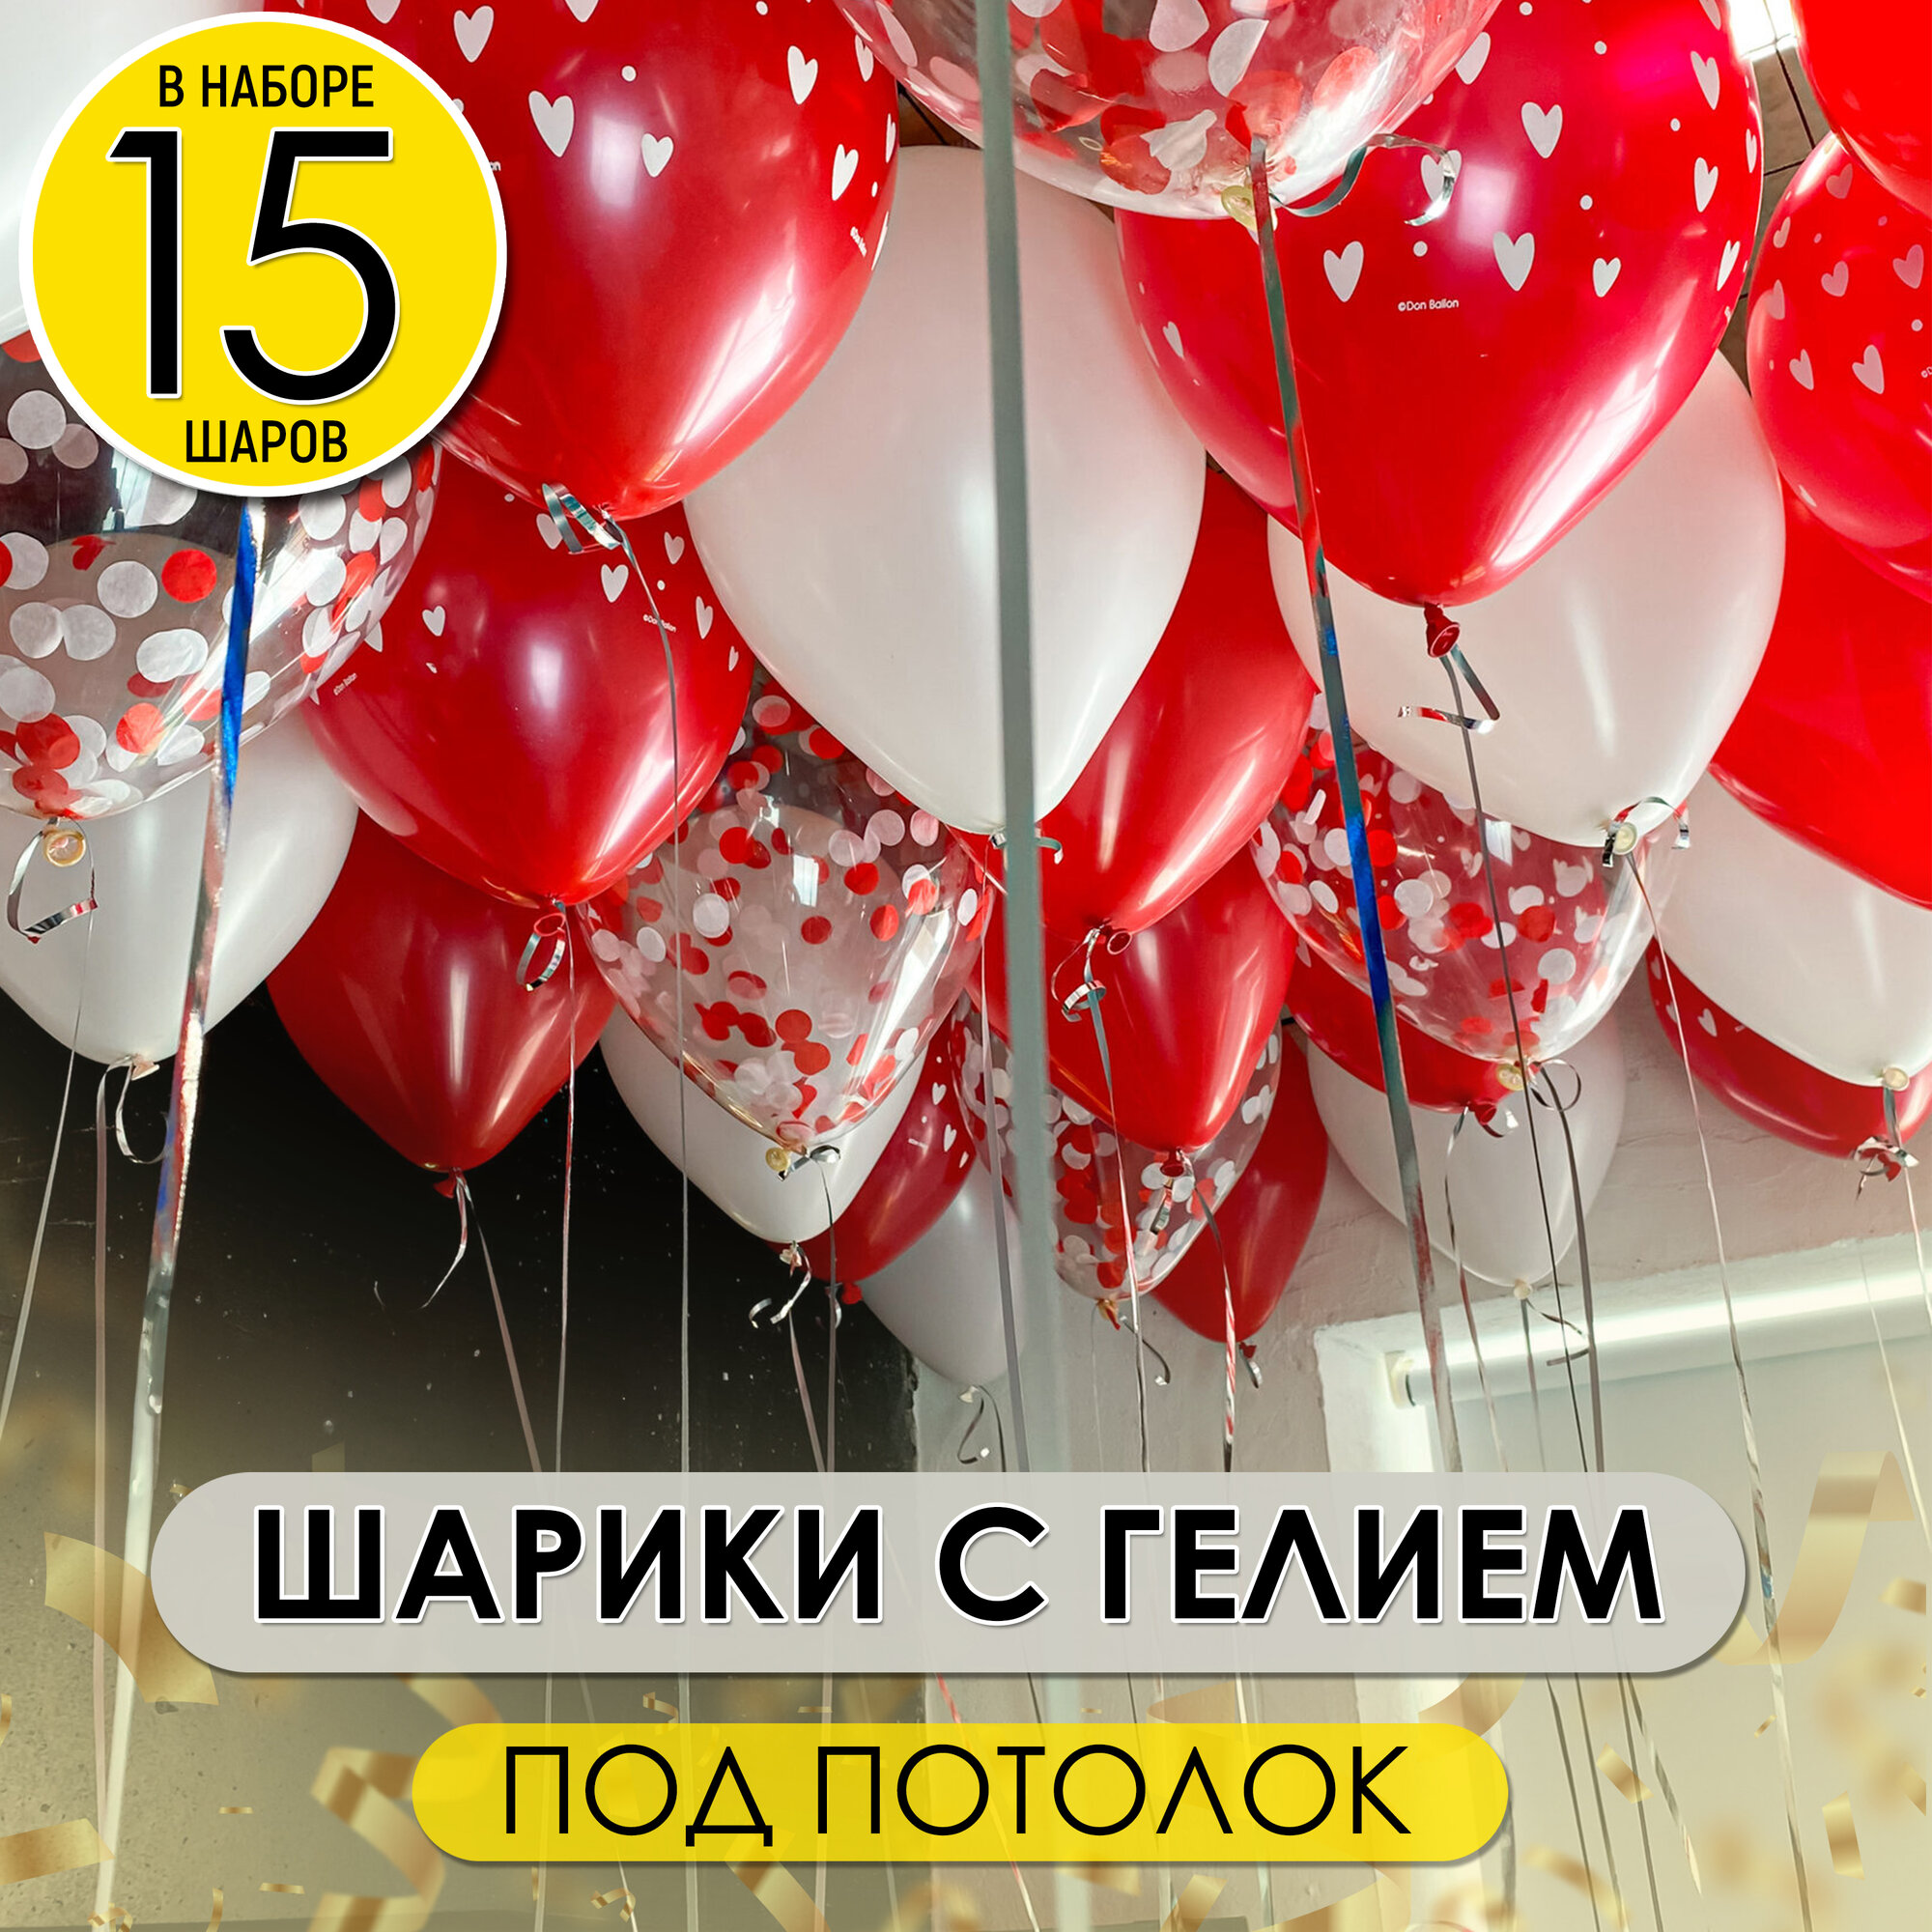 Воздушные шары для праздника надутые с гелием под потолок, 15 шт.